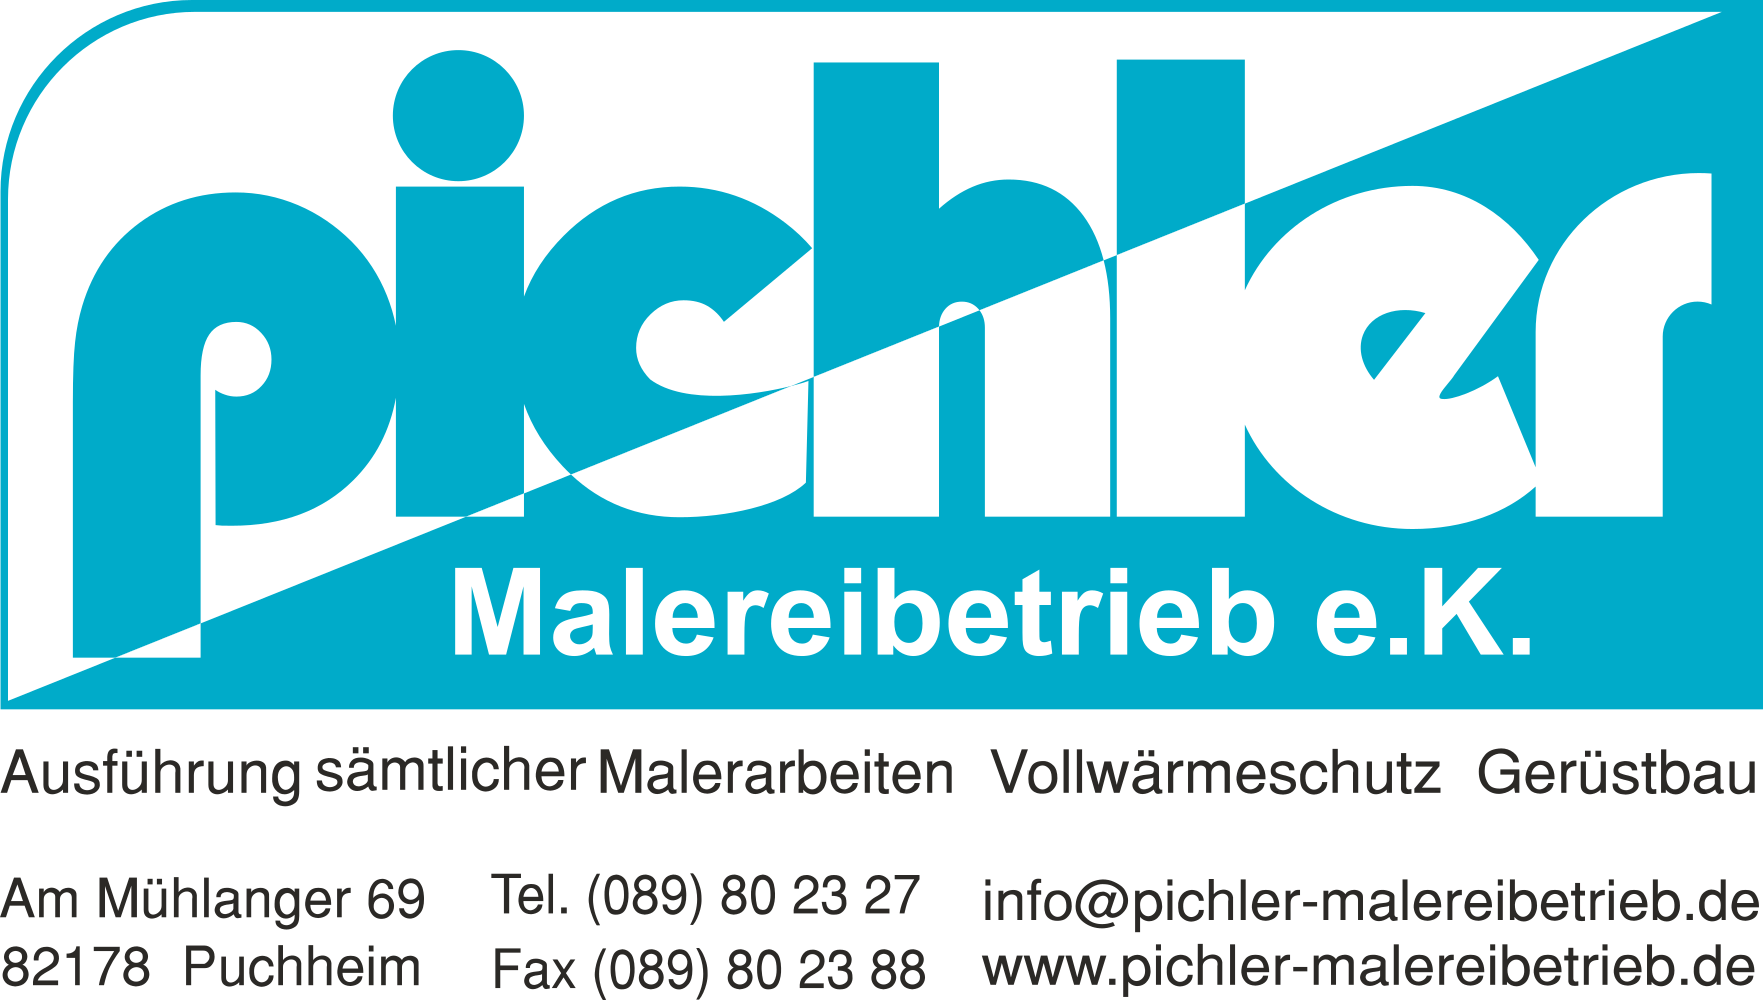 Pichler-Malereibetrieb e.K.